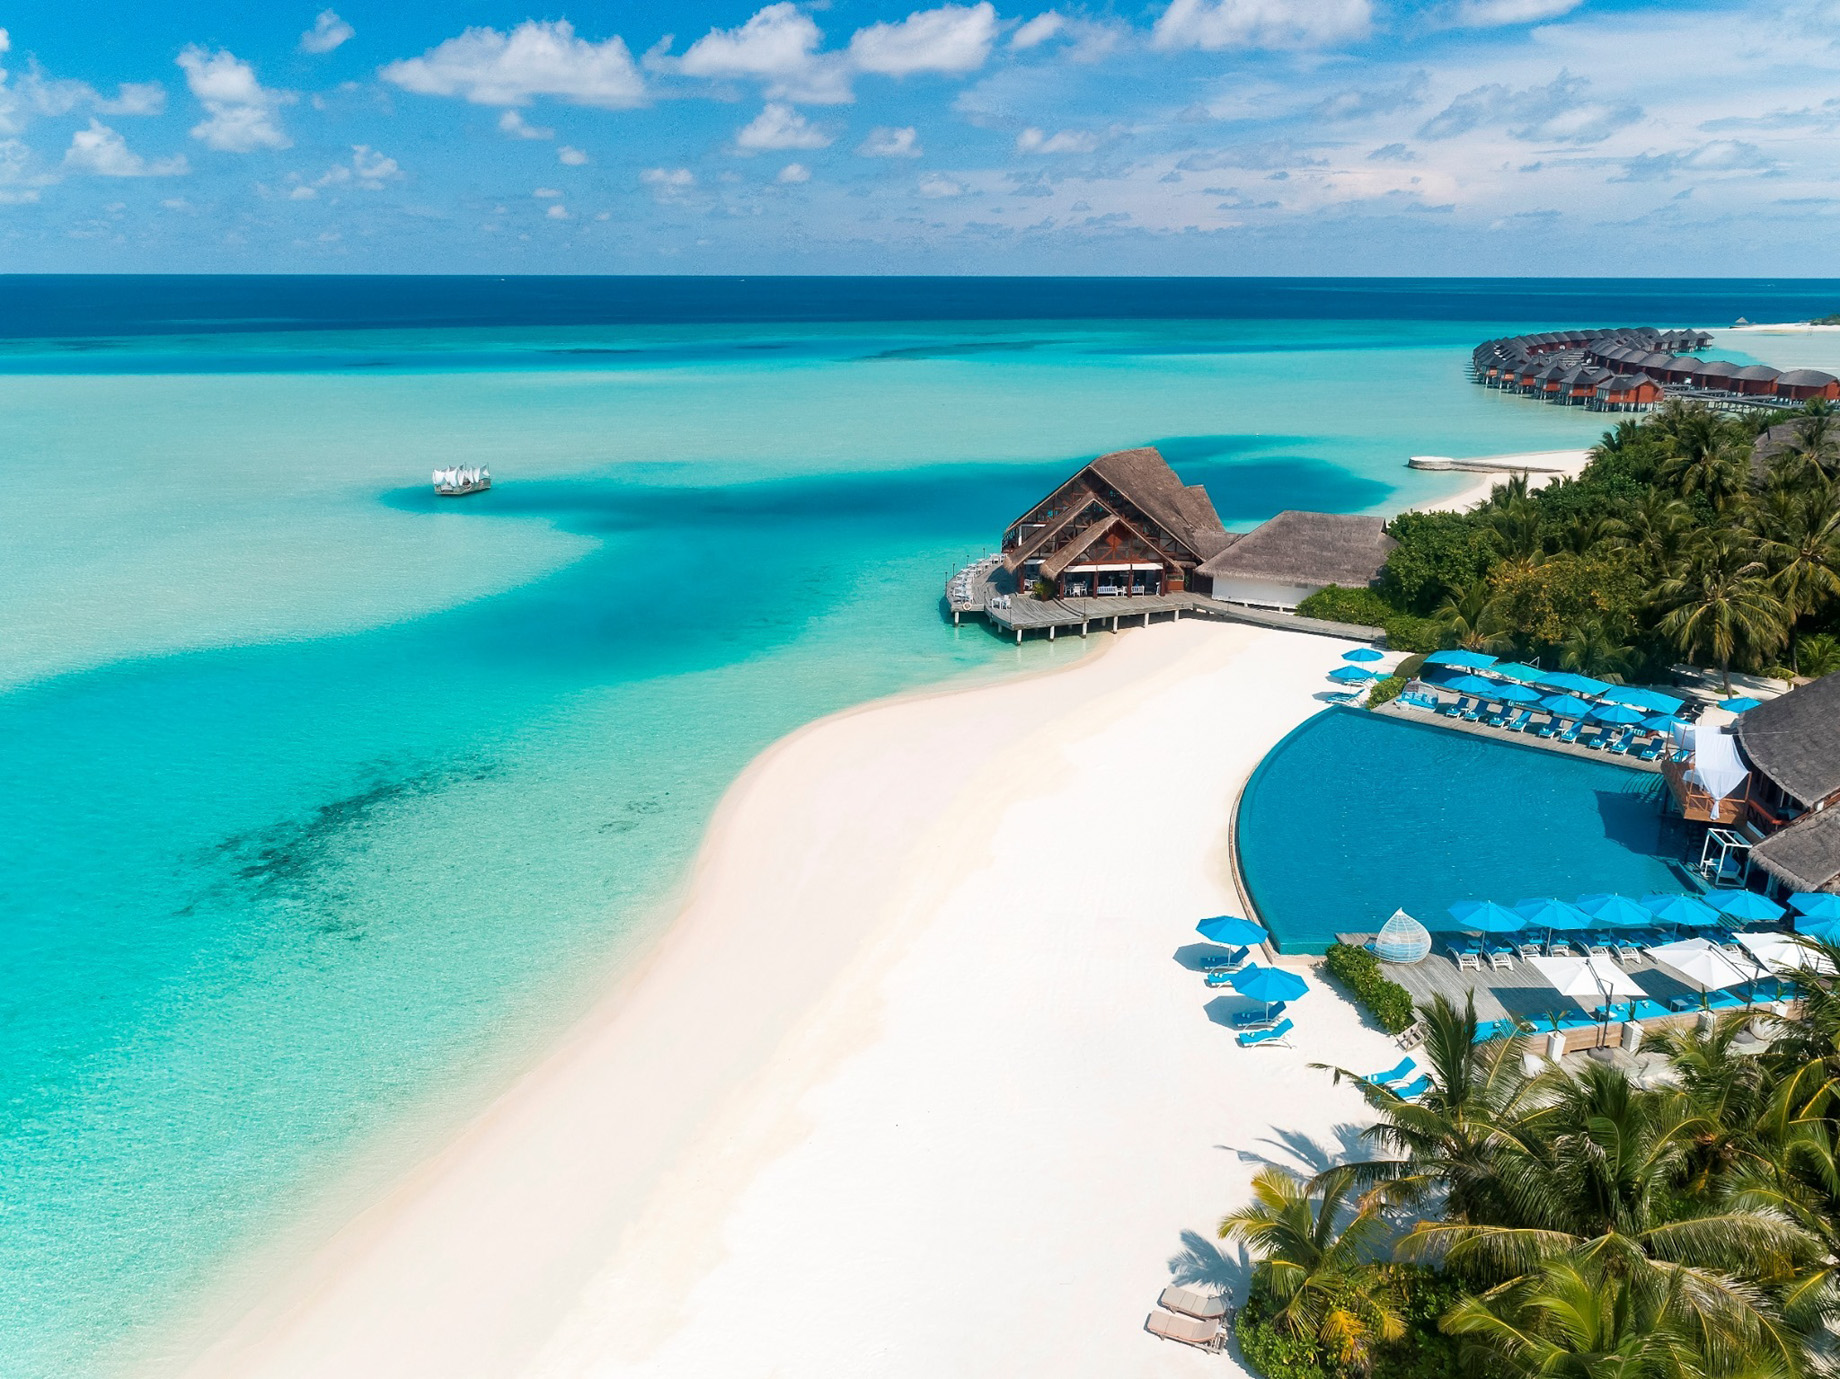 Anantara Thigu Maldives Resort - South Male Atoll, Maldives - Pool Aerial View